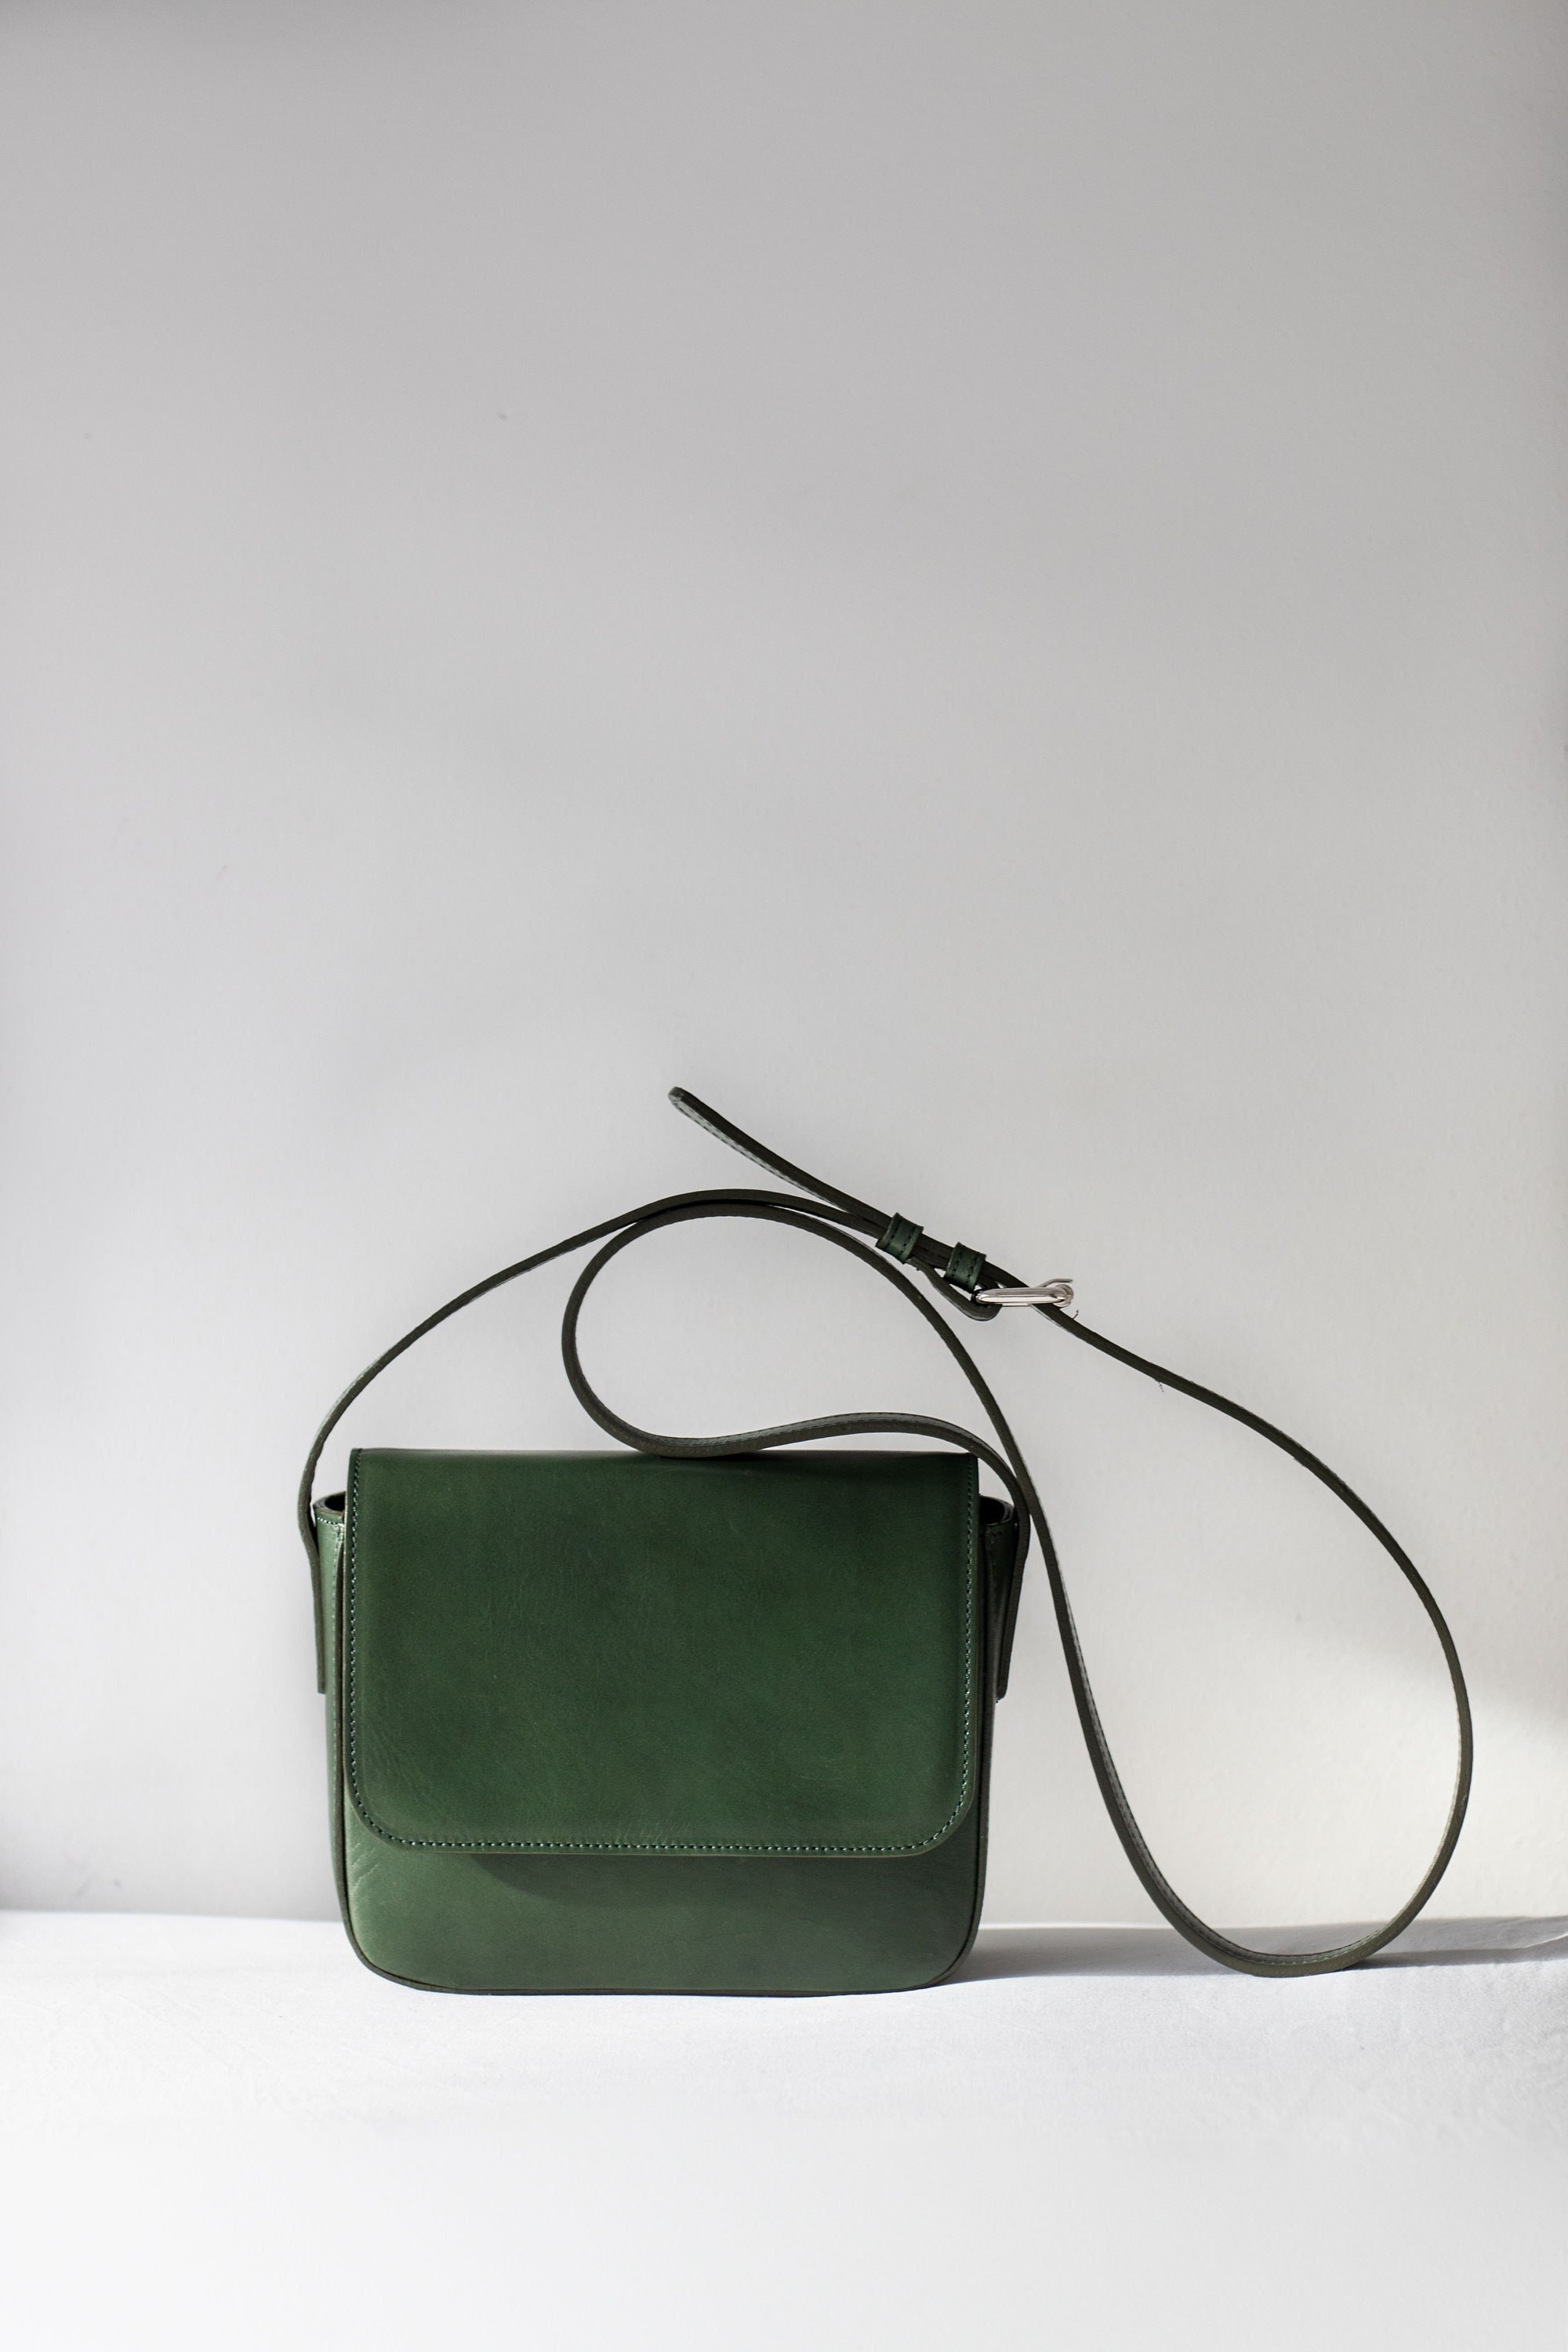 Handbag Charms - Aesthetic Shoulder Bag - Spring Bag - Classic Shoulder Bag - Slow Fashion